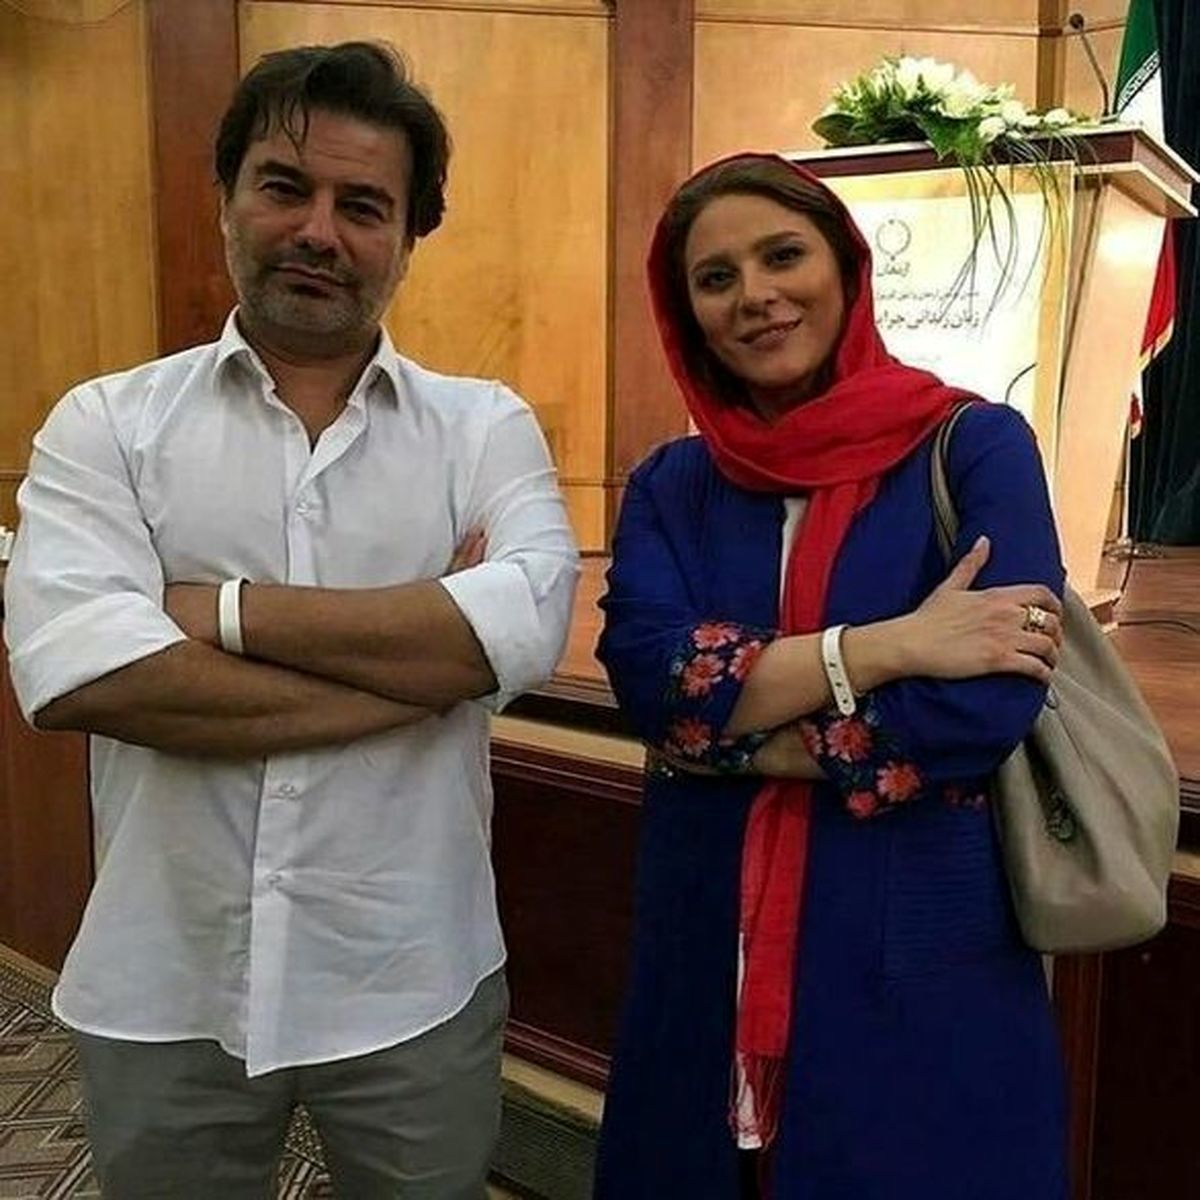 پیمان قاسم خانی| ماجرای رونمایی از همسر دومش جنجالی شد + عکس و بیوگرافی